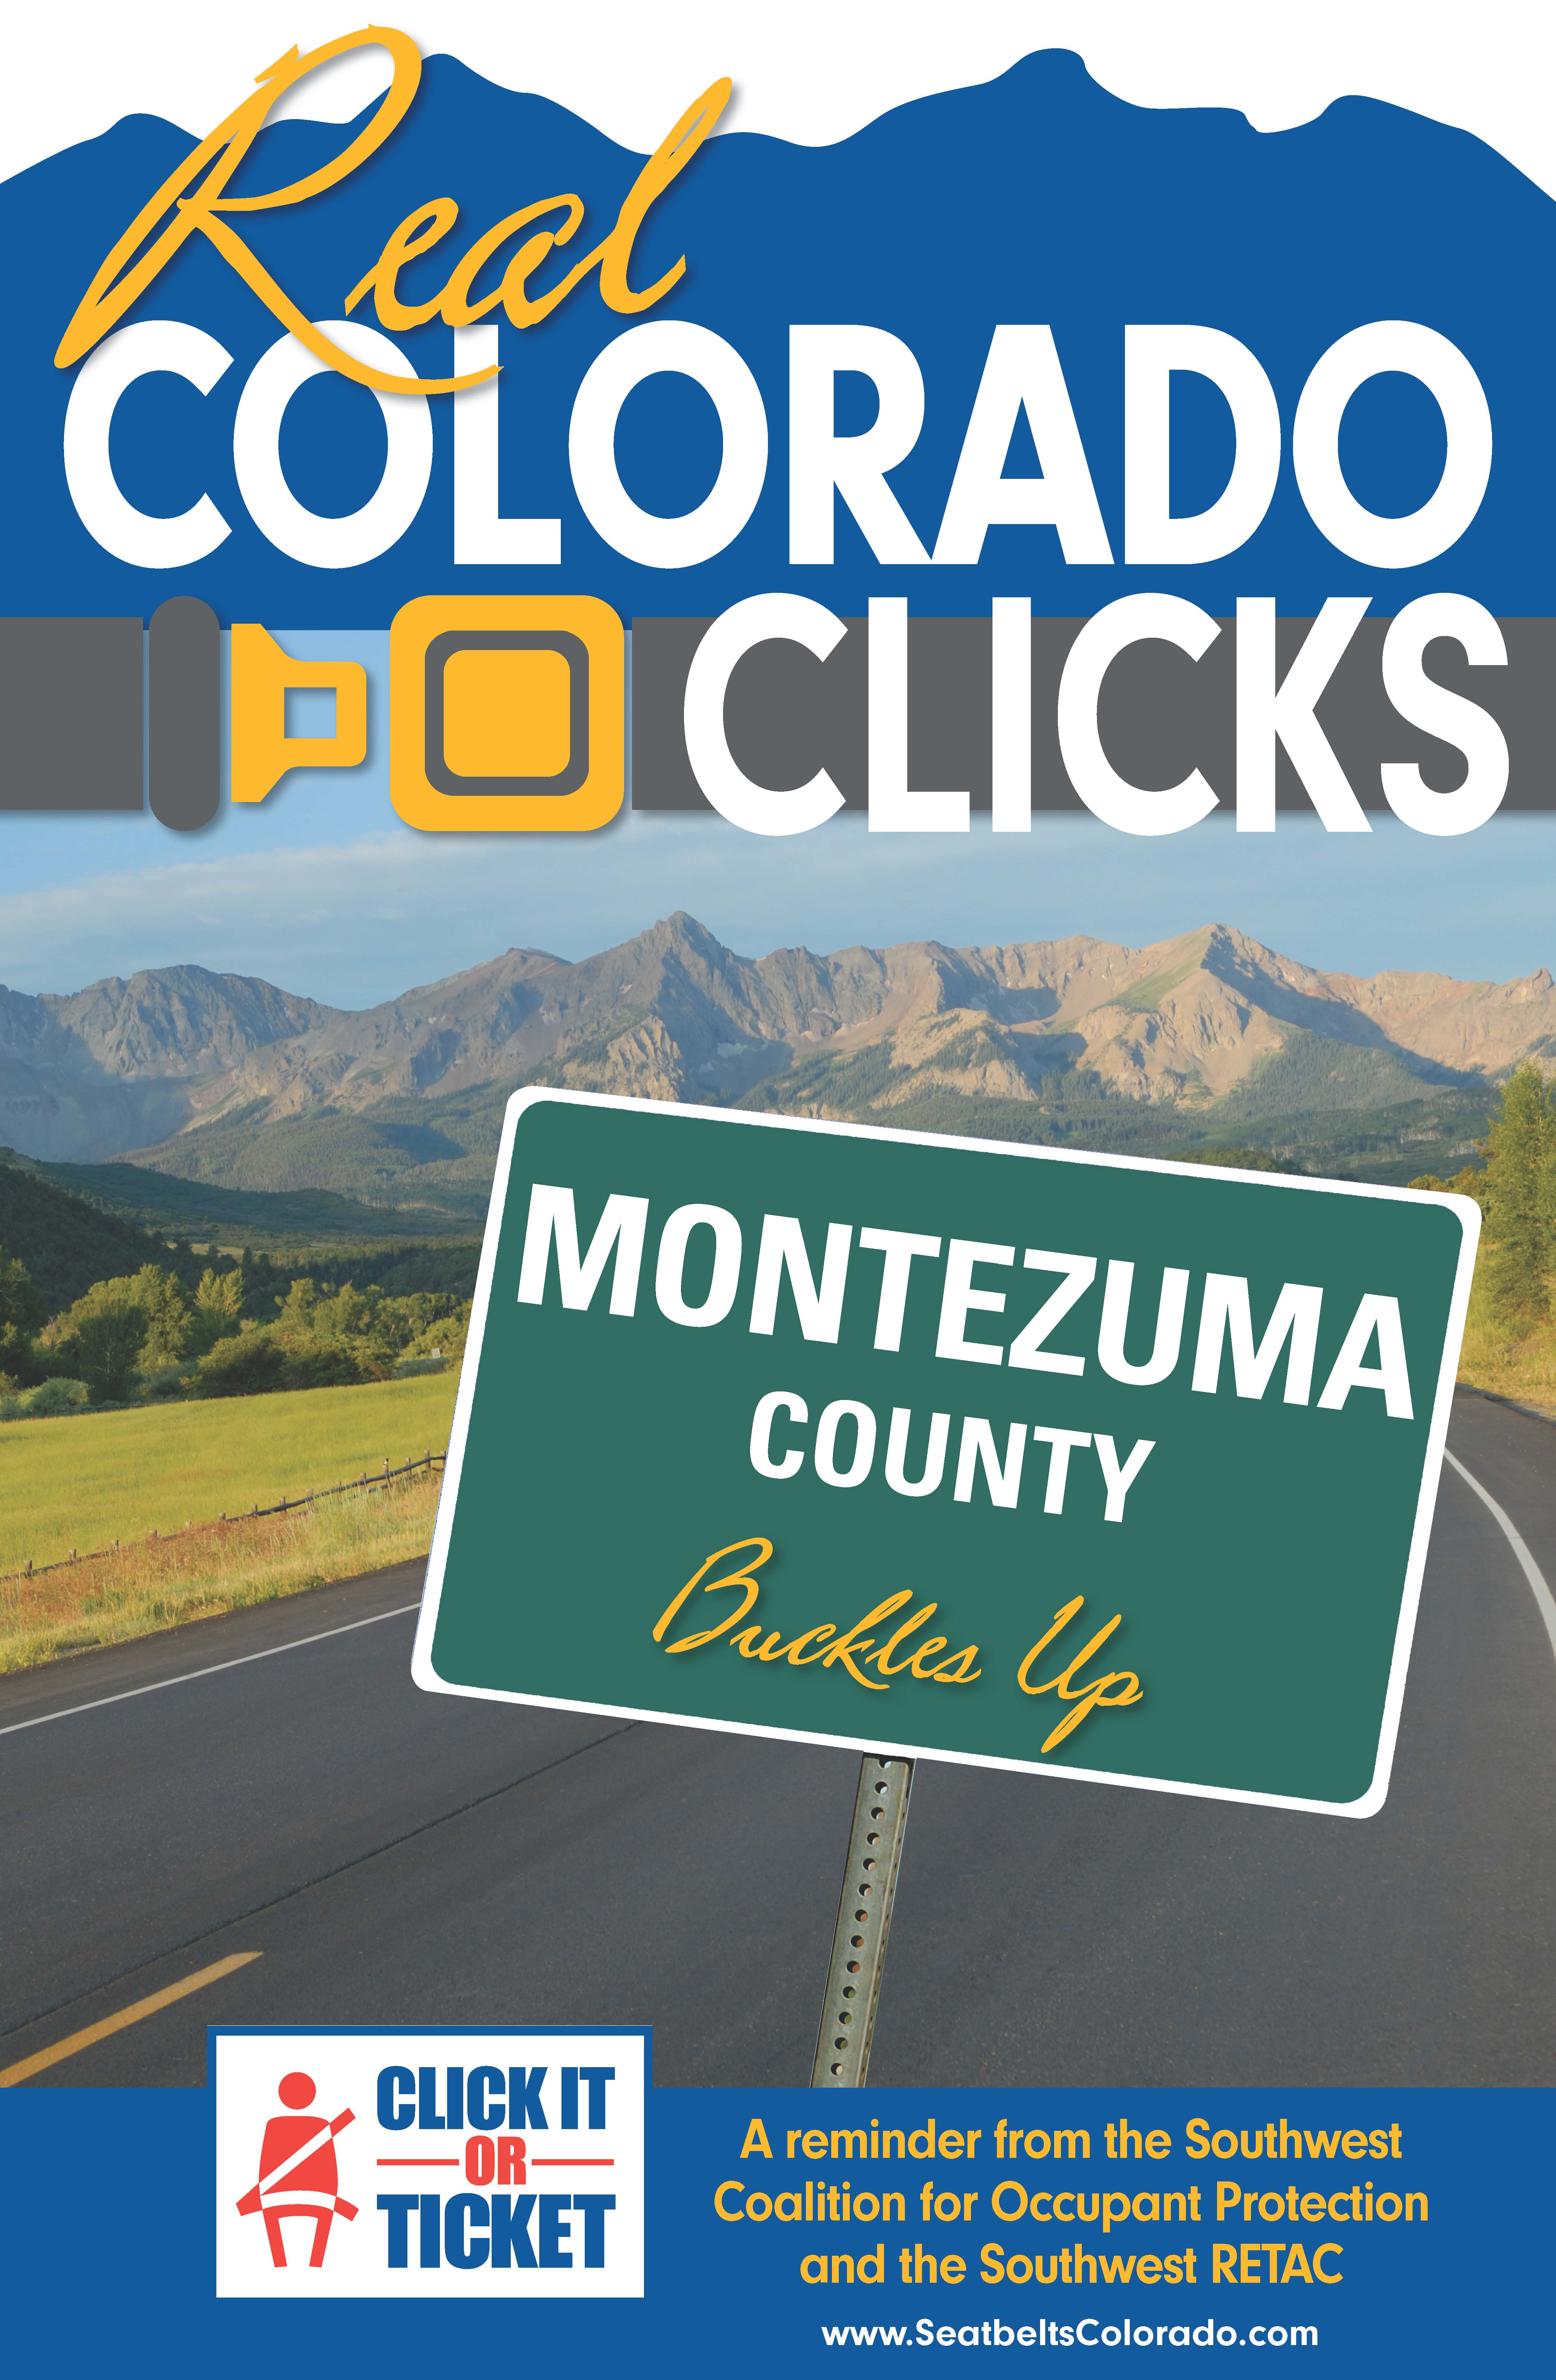 ColoradoClicks_SW_Colorado_RETAC_final.jpg detail image